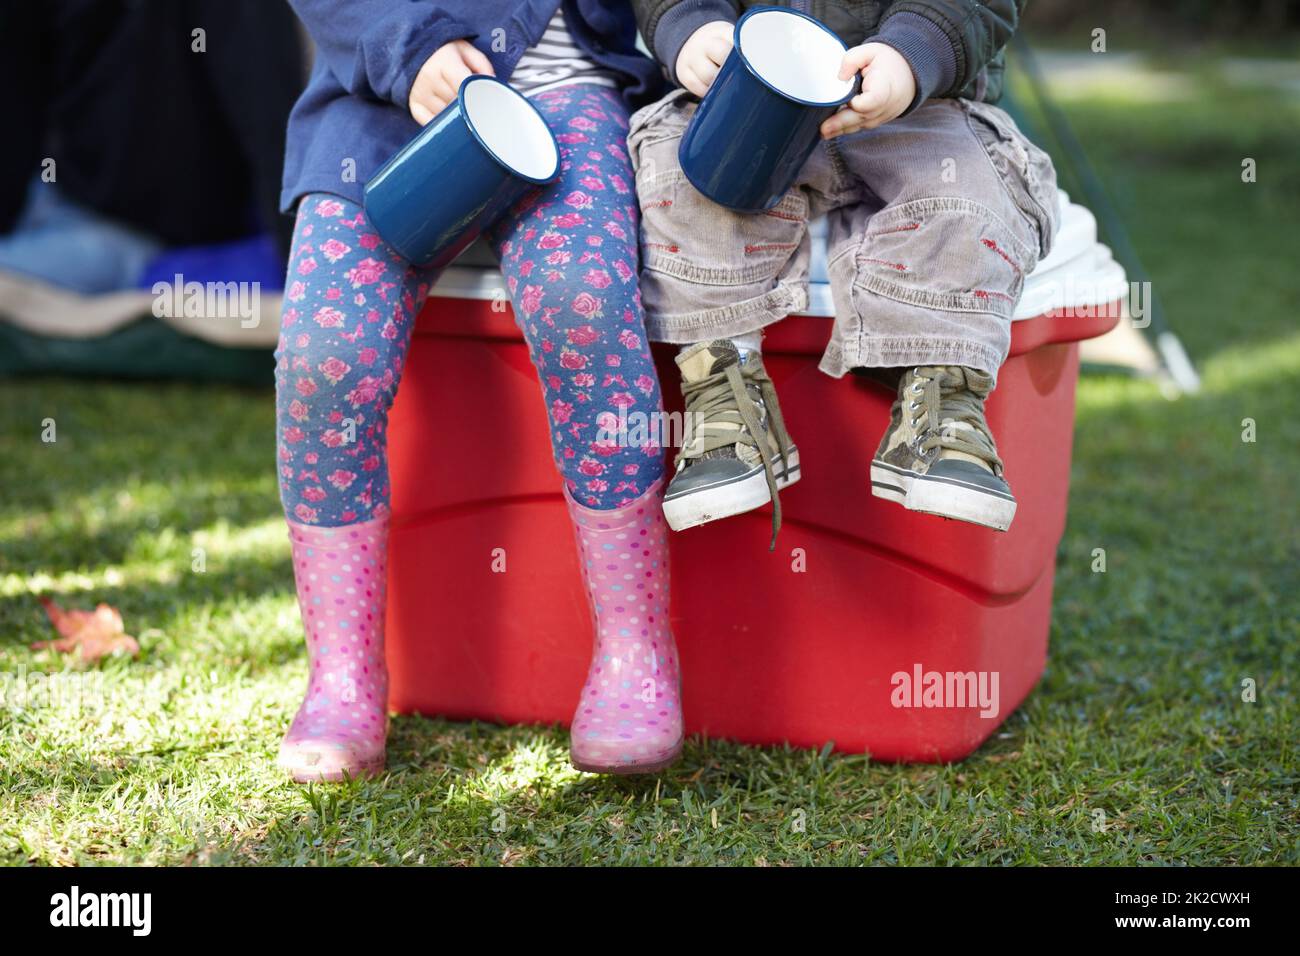 Kleine Camper einfach nur entspannend. Beschnittene Ansicht von zwei kleinen Kindern, die Blechbecher halten, während sie auf einer Kühlbox sitzen. Stockfoto